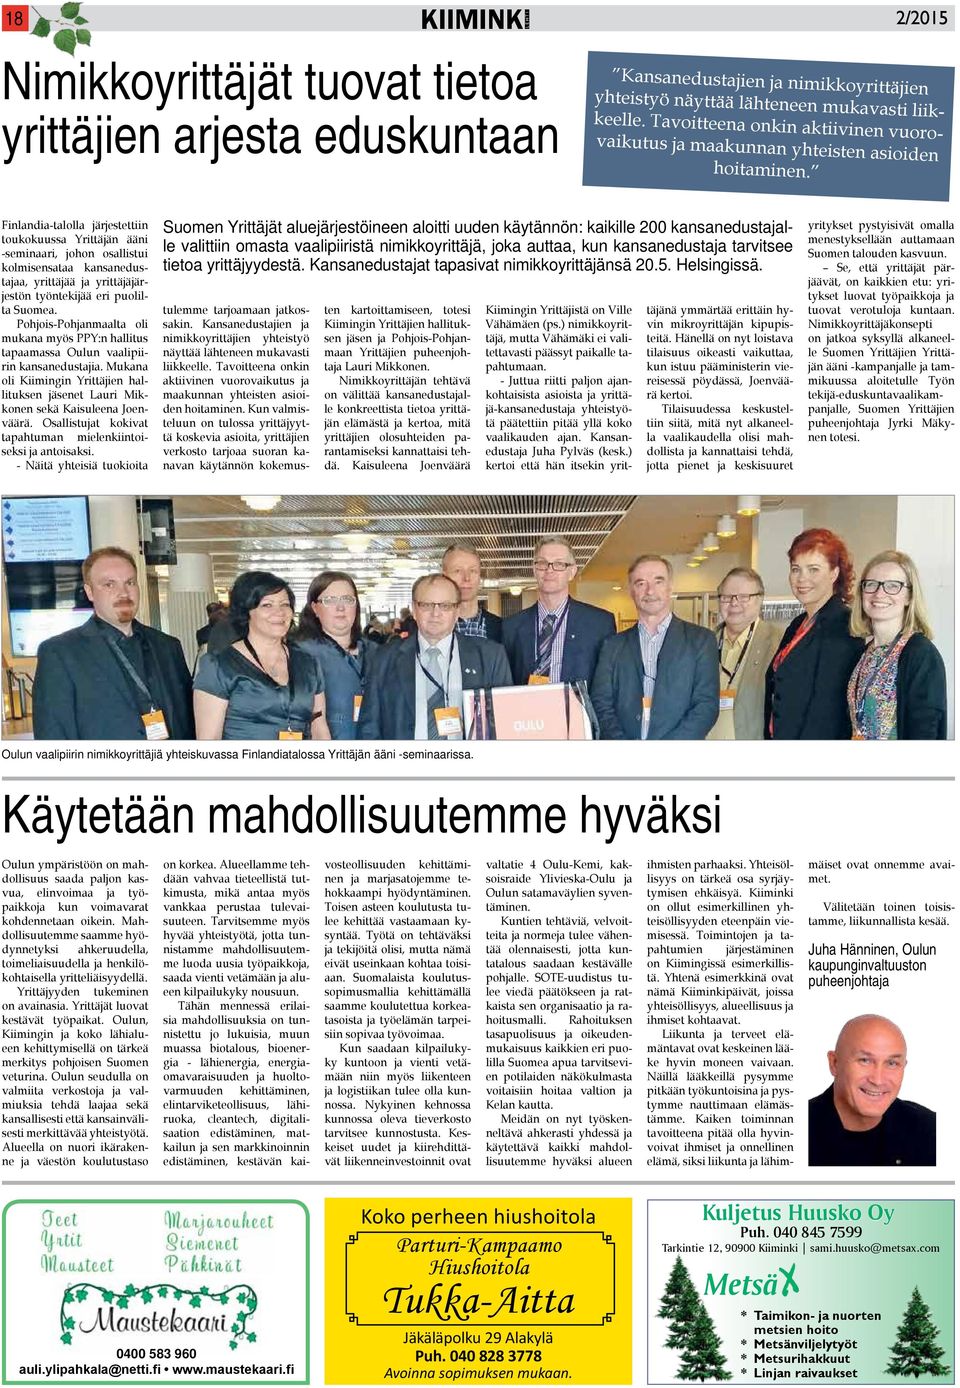 Finlandia-talolla järjestettiin toukokuussa Yrittäjän ääni -seminaari, johon osallistui kolmisensataa kansanedustajaa, yrittäjää ja yrittäjäjärjestön työntekijää eri puolilta Suomea.